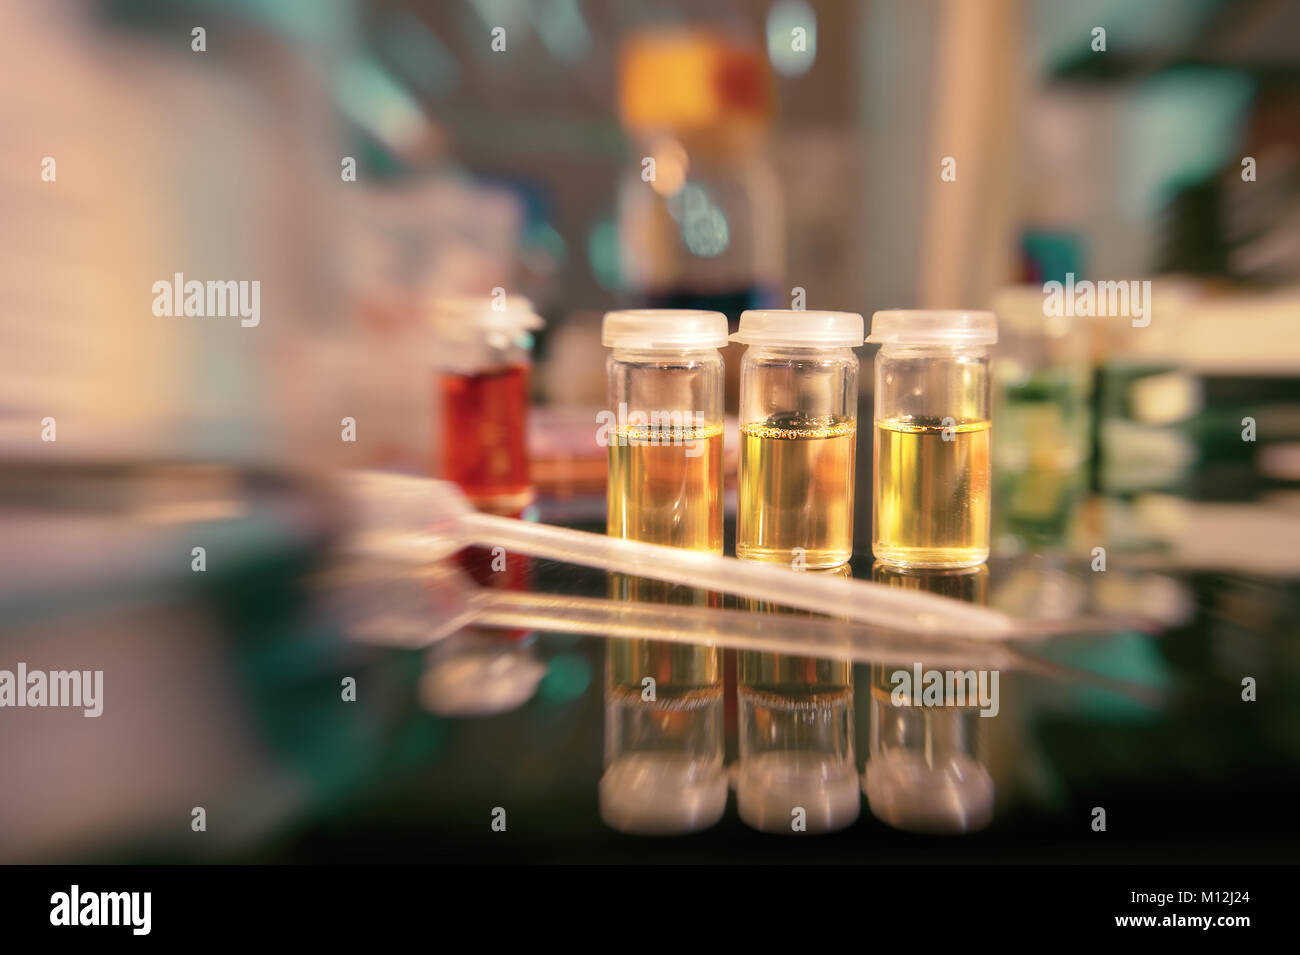 Mikrobiologie Hintergrund. Flüssige bakteriellen Kulturen auf der Bank, flachen DOF, auf der drei gelben Fläschchen Fokus Stockfoto